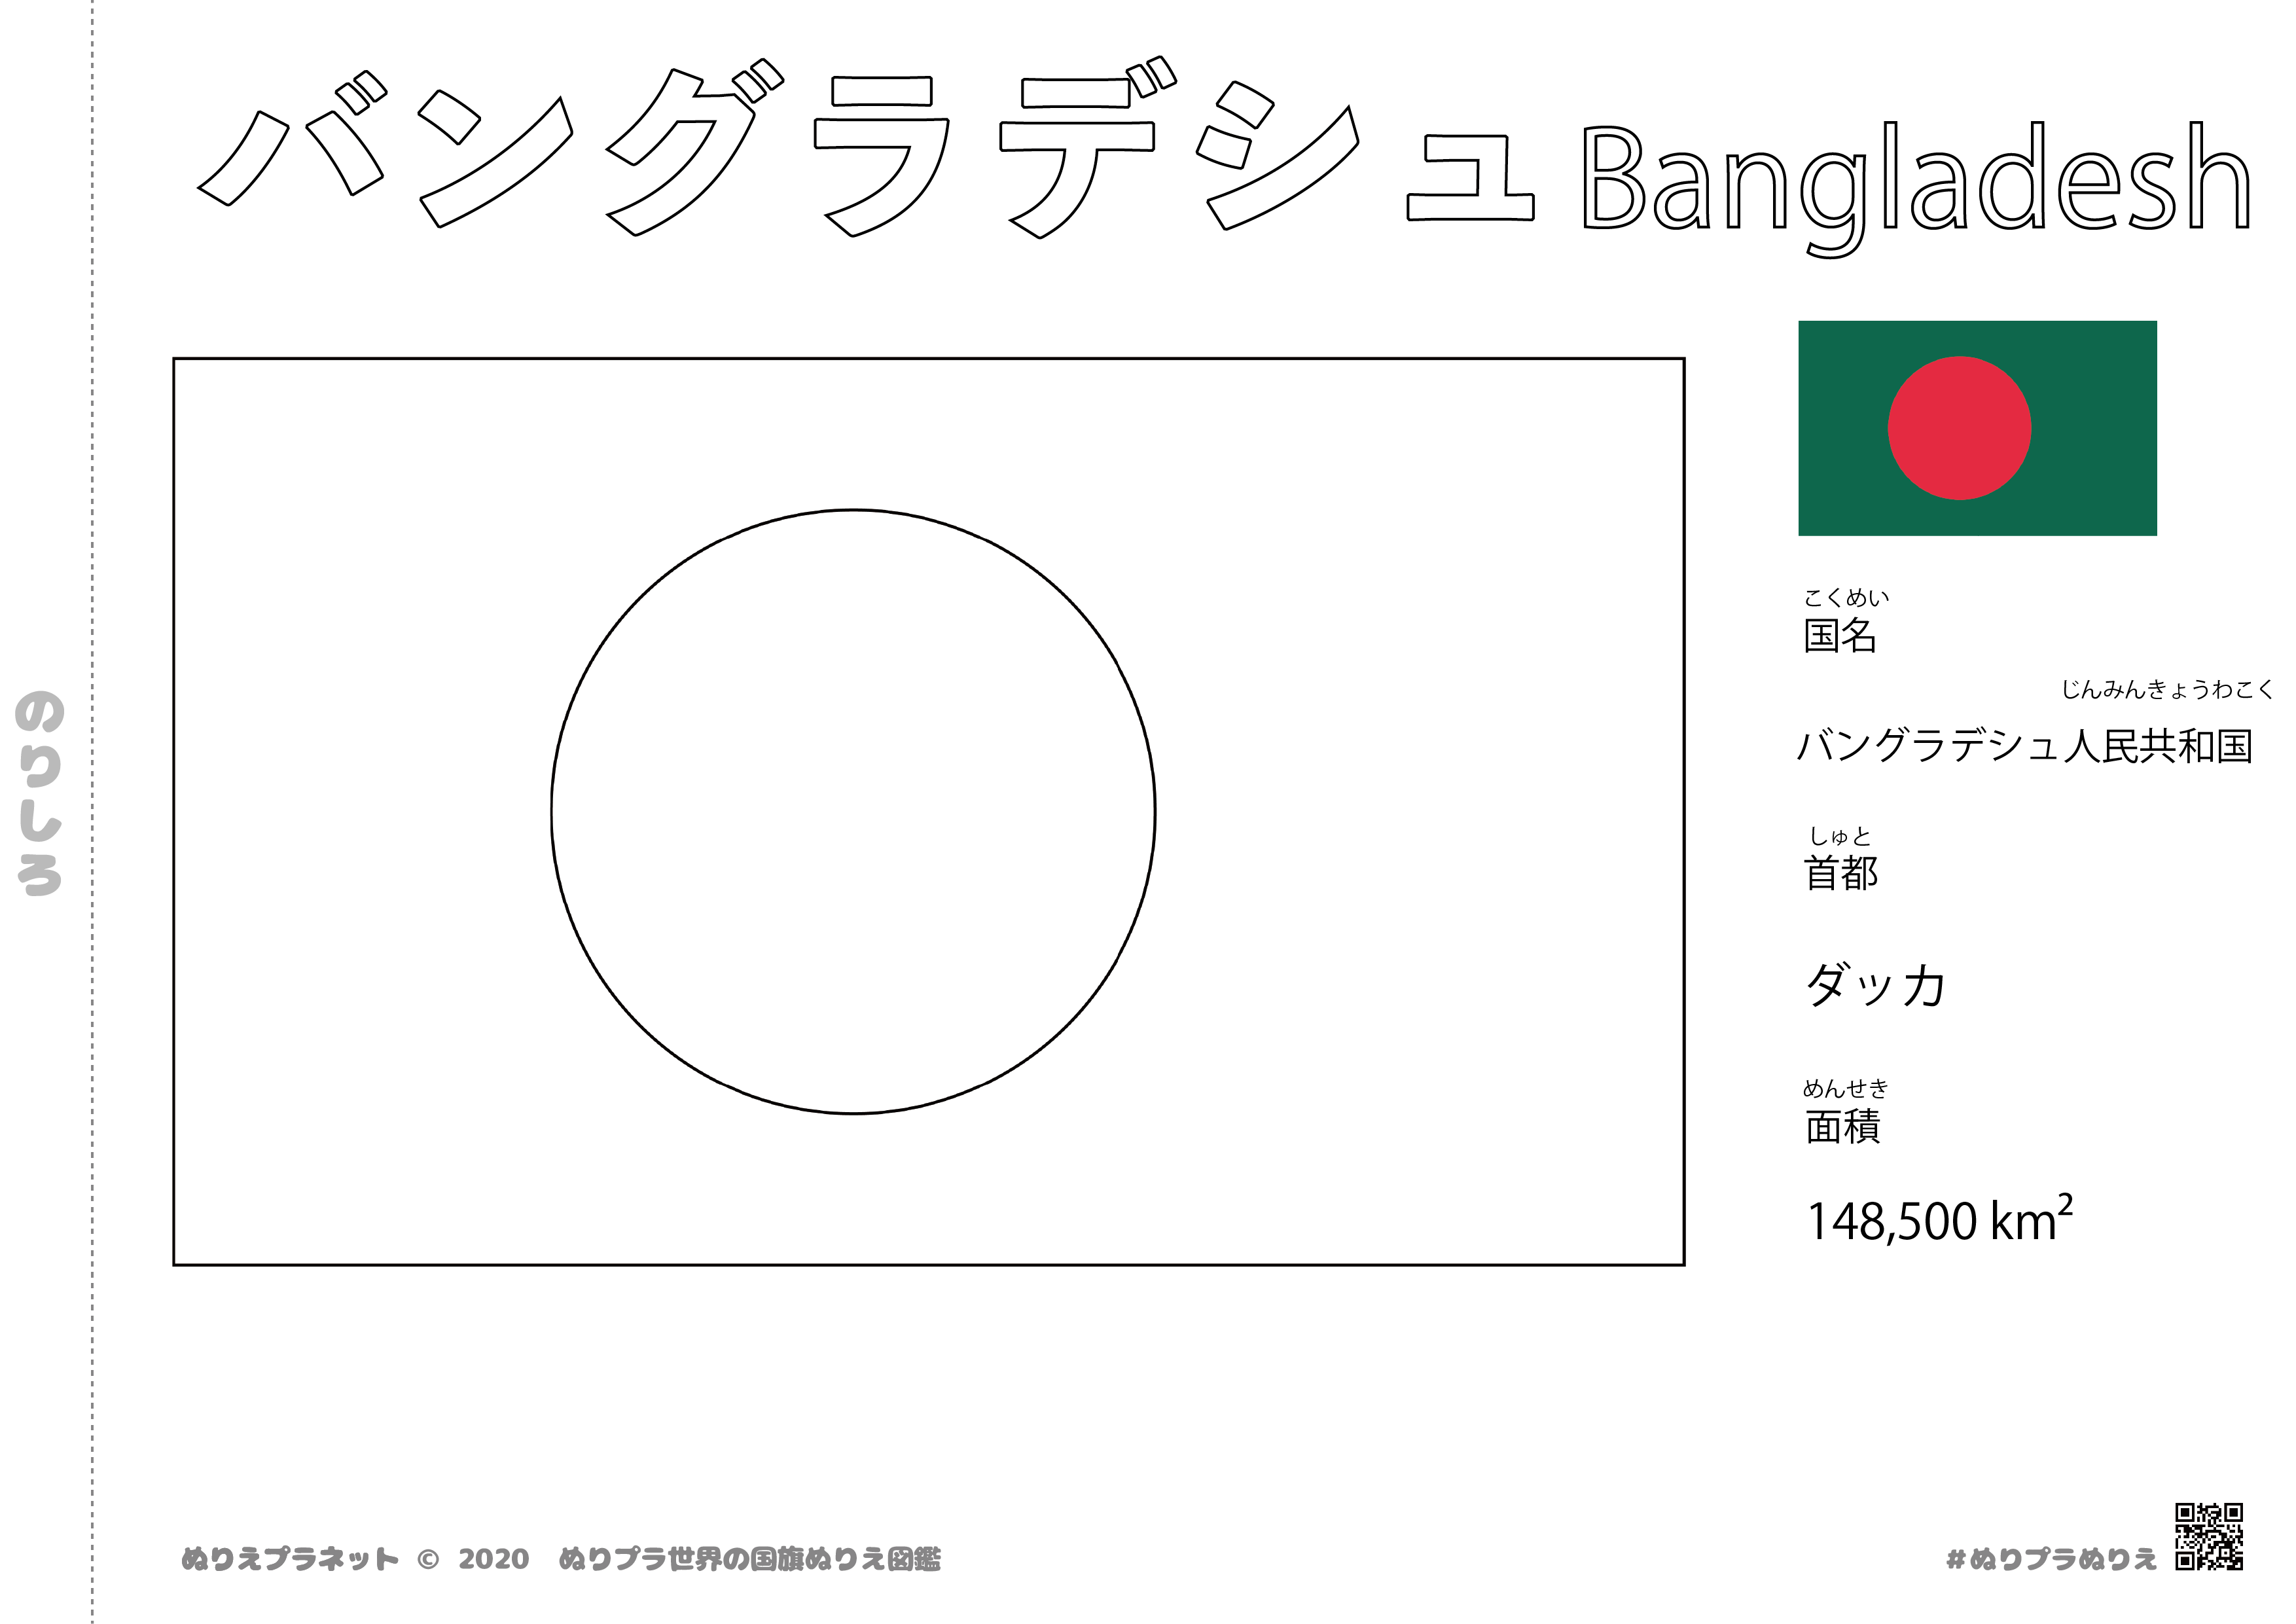 バングラデシュ の国旗塗り絵です。国名、首都、面積も覚えられます。